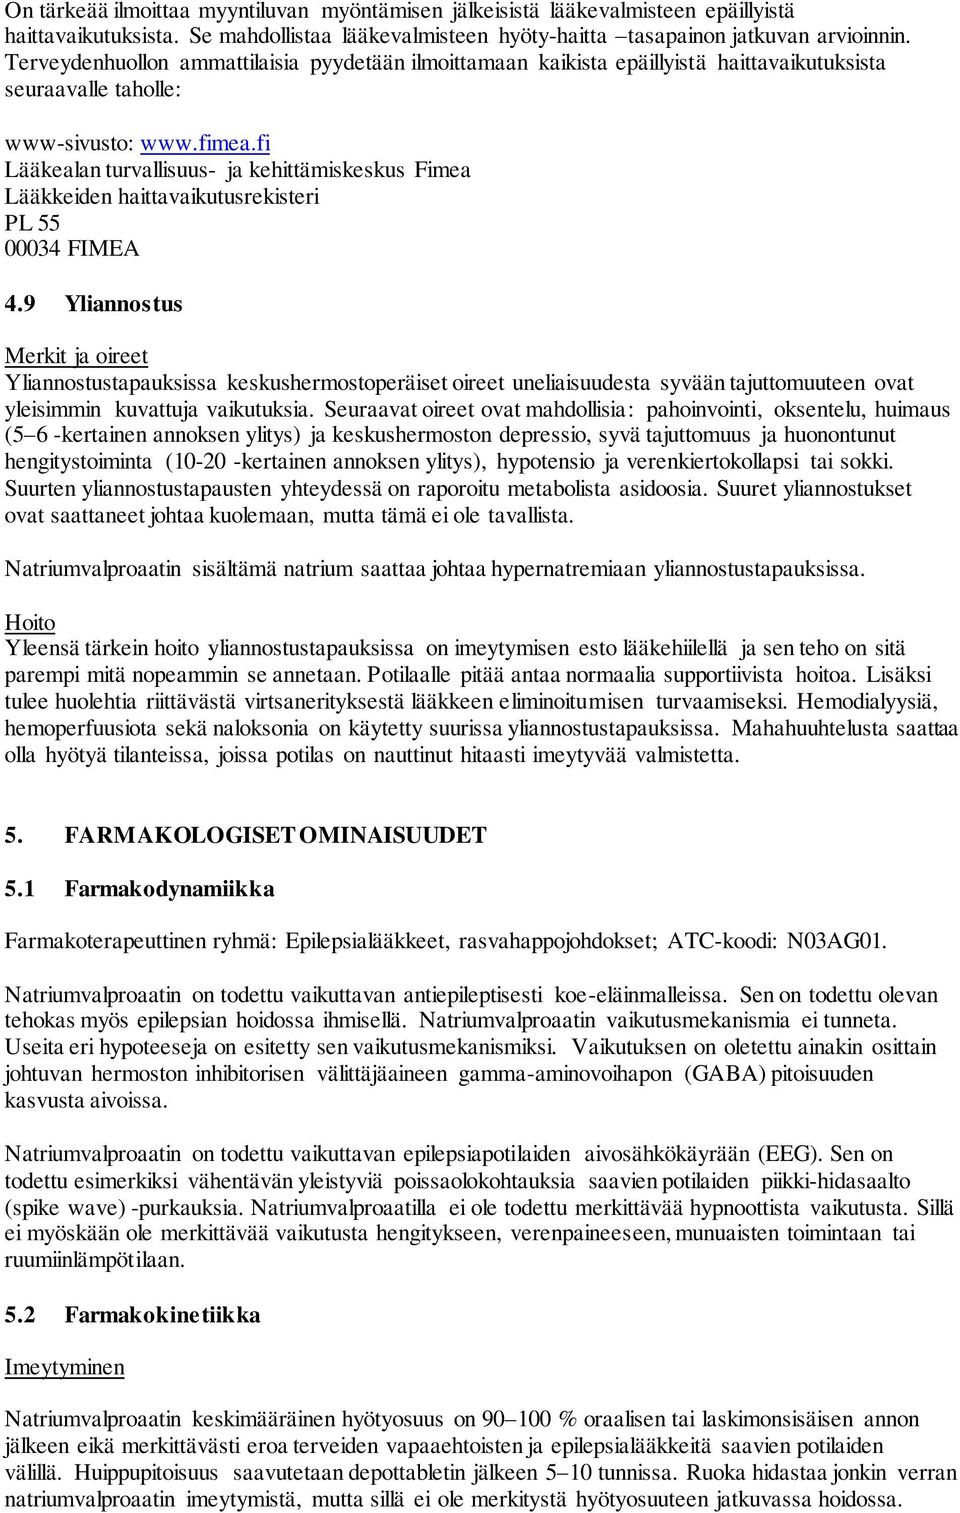 fi Lääkealan turvallisuus- ja kehittämiskeskus Fimea Lääkkeiden haittavaikutusrekisteri PL 55 00034 FIMEA 4.